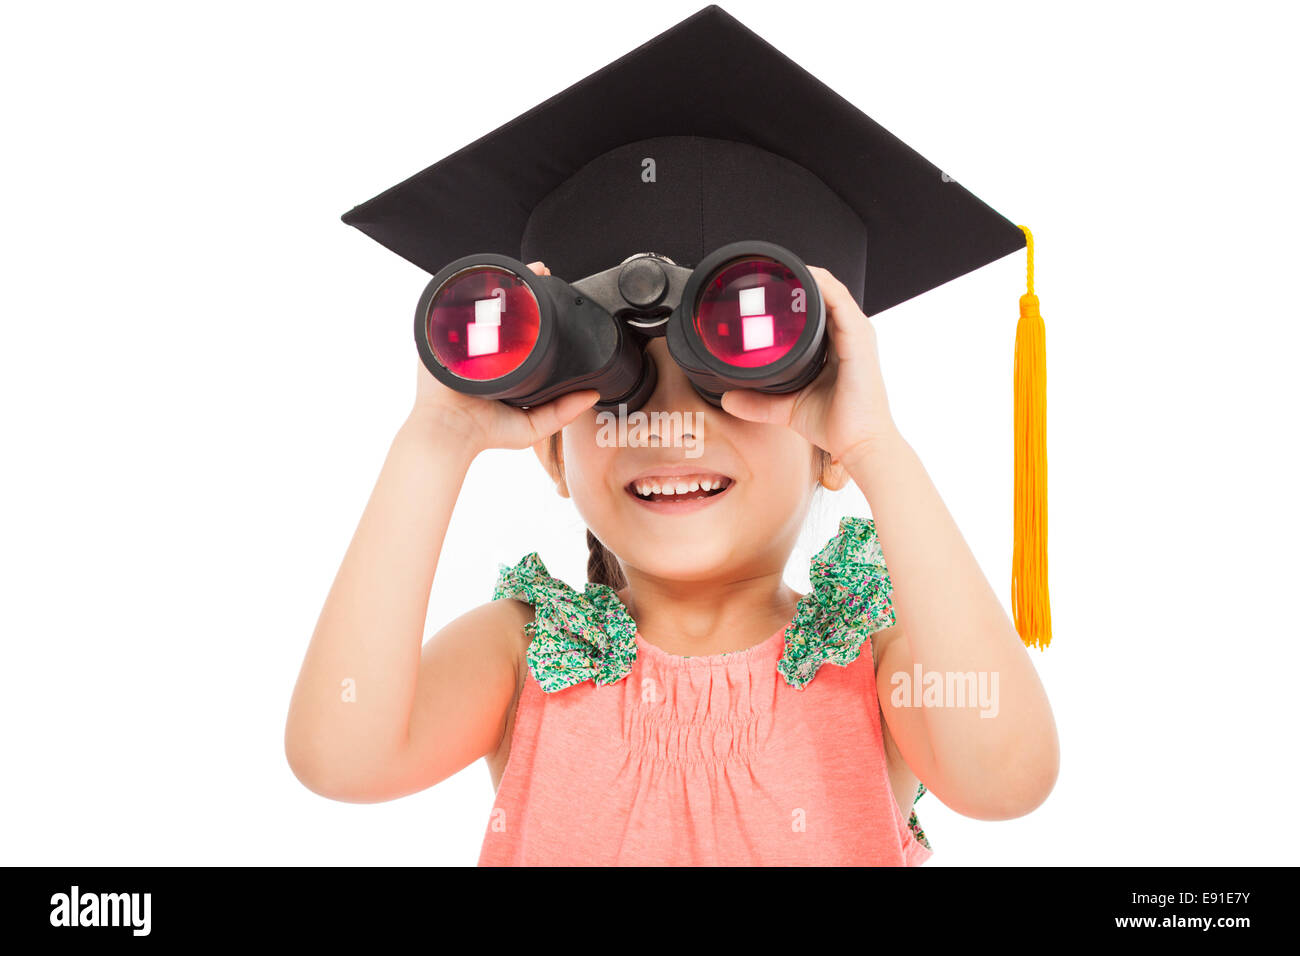 Bambina studente che sta cercando attraverso il binocolo. isolato su sfondo bianco Foto Stock